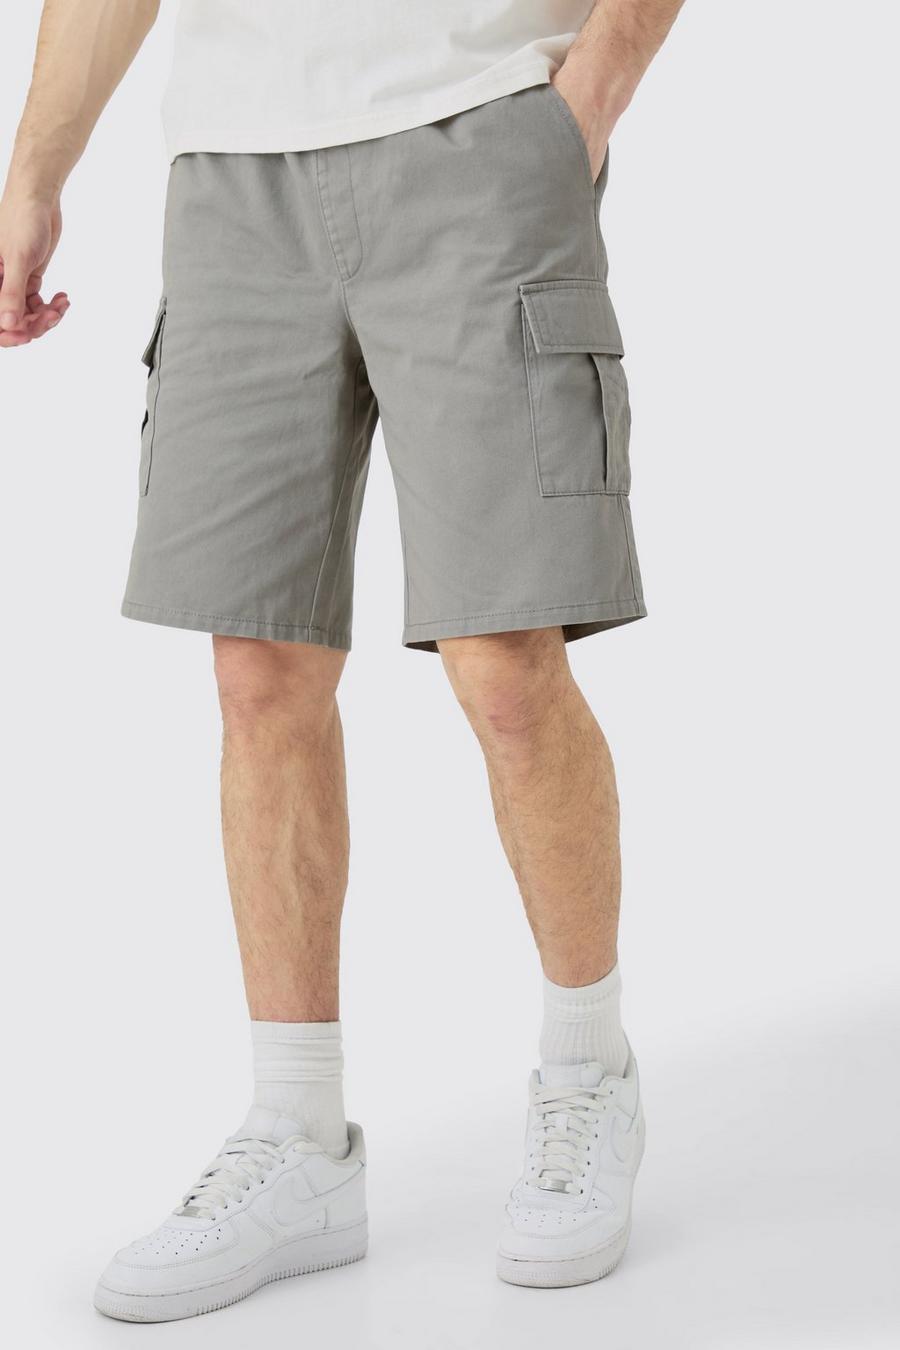 Pantalones cortos Tall cargo holgados con cintura elástica en gris, Grey